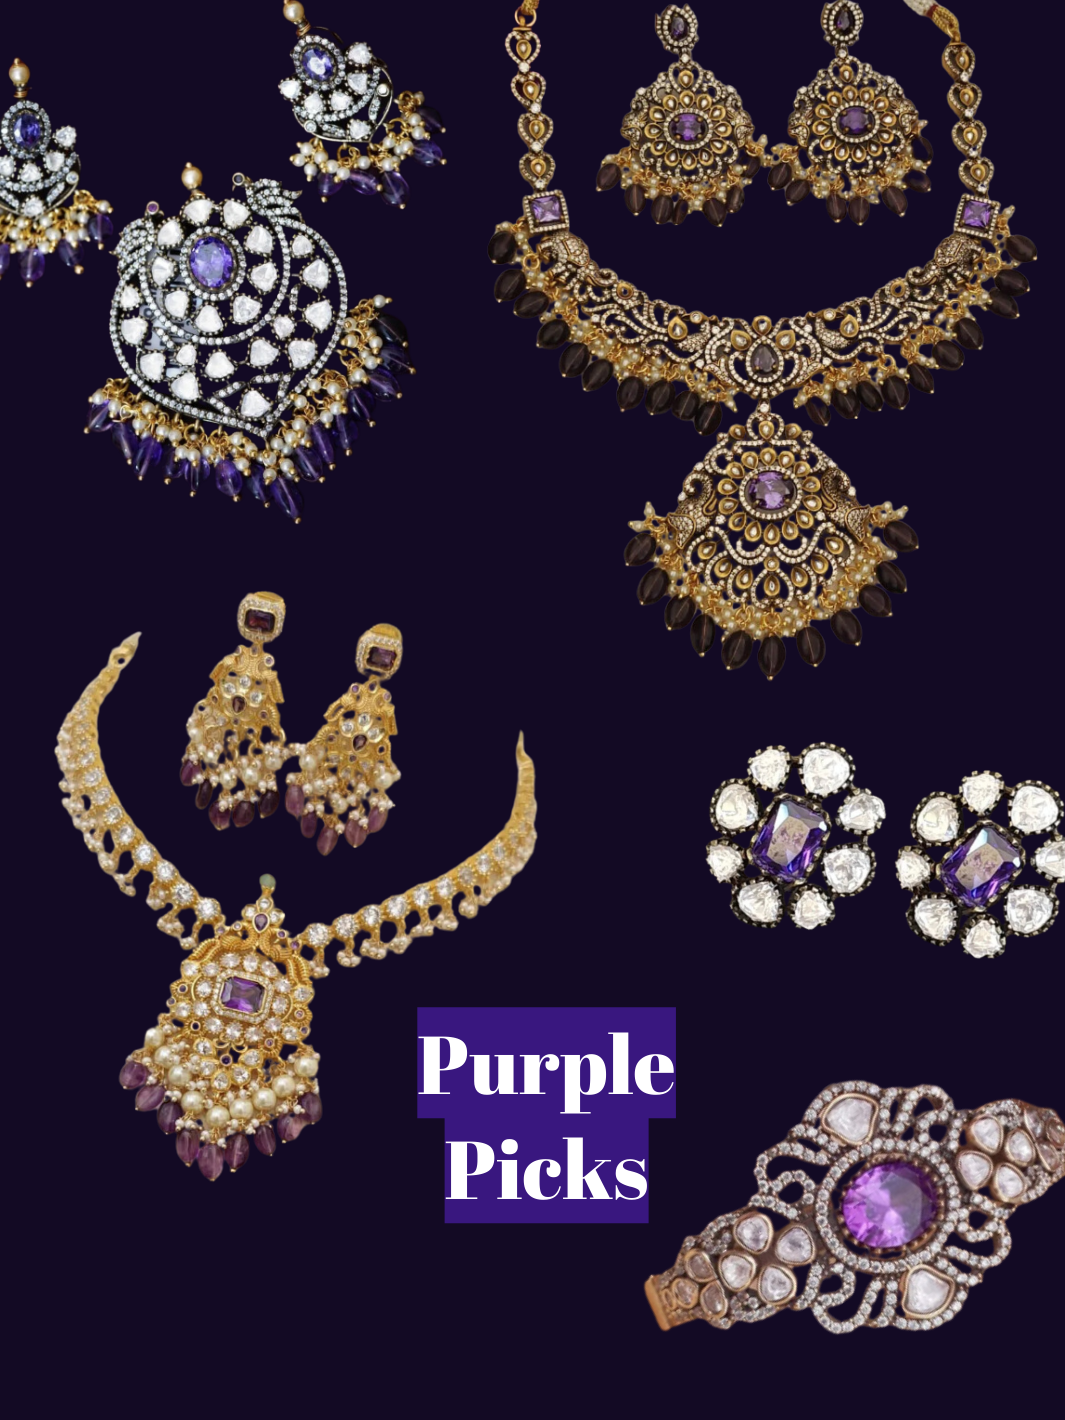 Purple picks